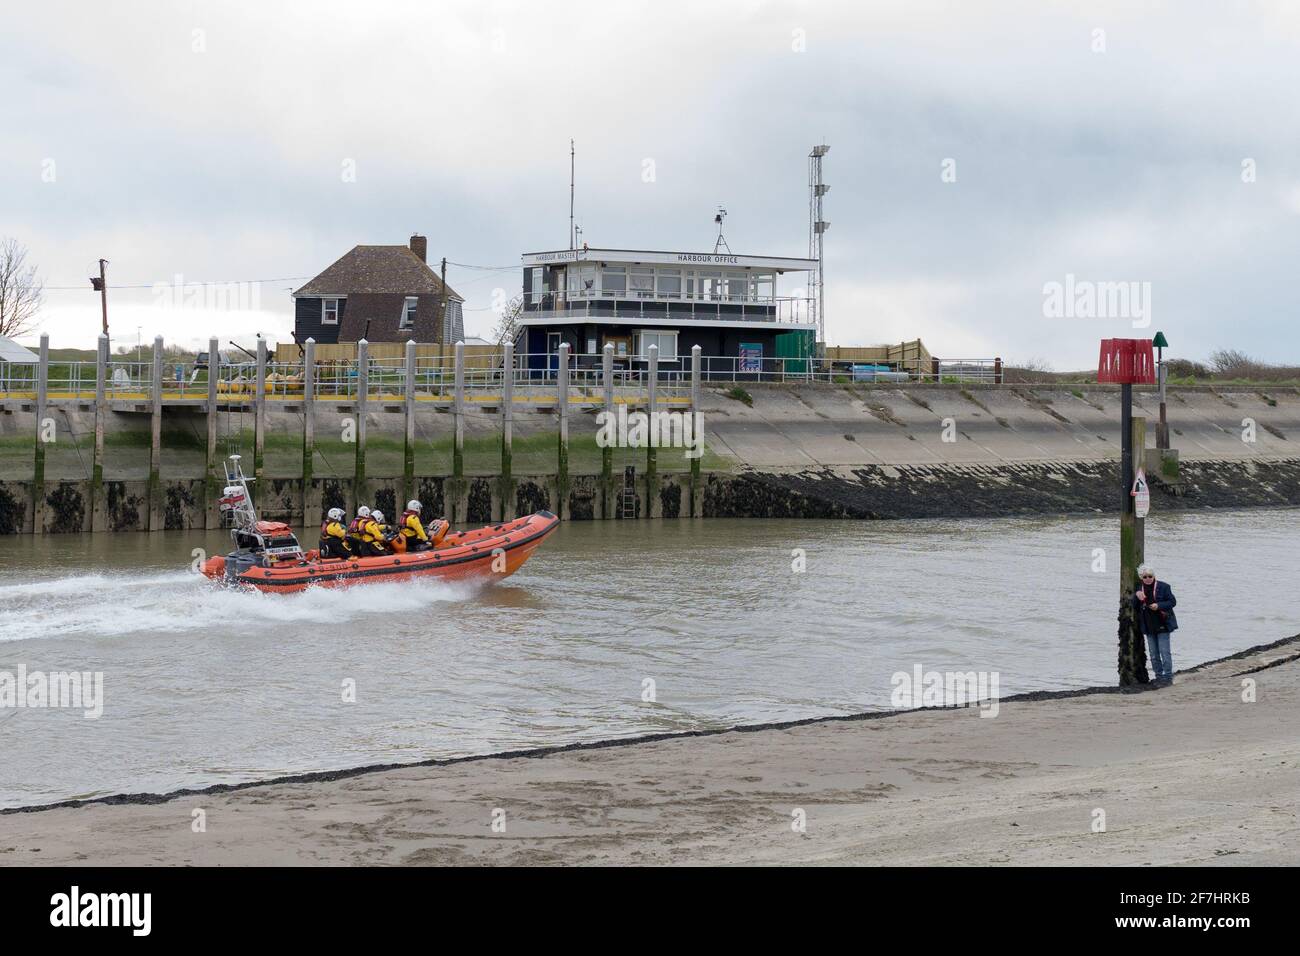 6 avril 2021 : bateau de sauvetage côtier, Atlantic 85 ILB a jéré au large du port de Rye en réponse à un appel de stress dans le chenal anglais, côte sud, Angleterre Banque D'Images